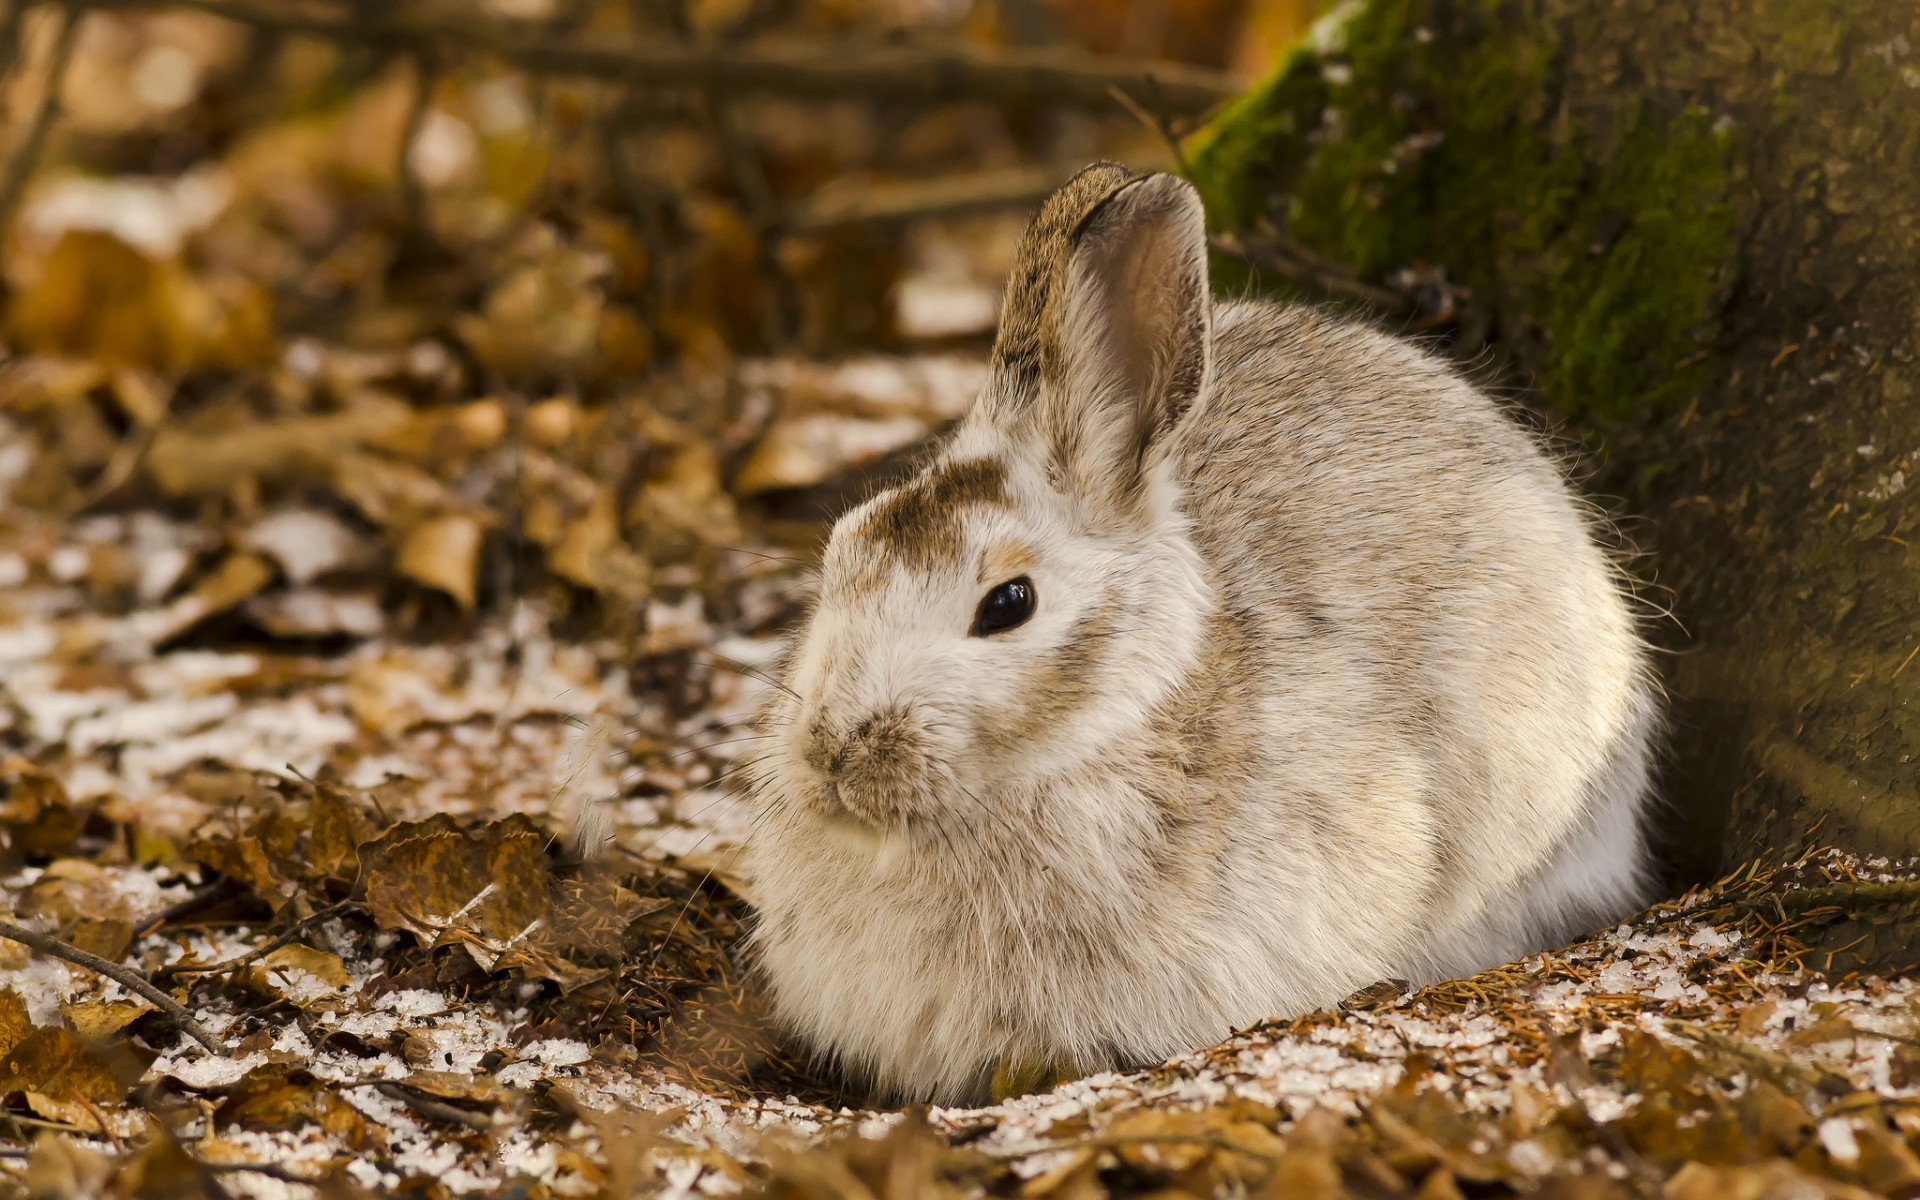 نمایی جالب از خرگوش وحشی cute و نمکی در حیات وحش 